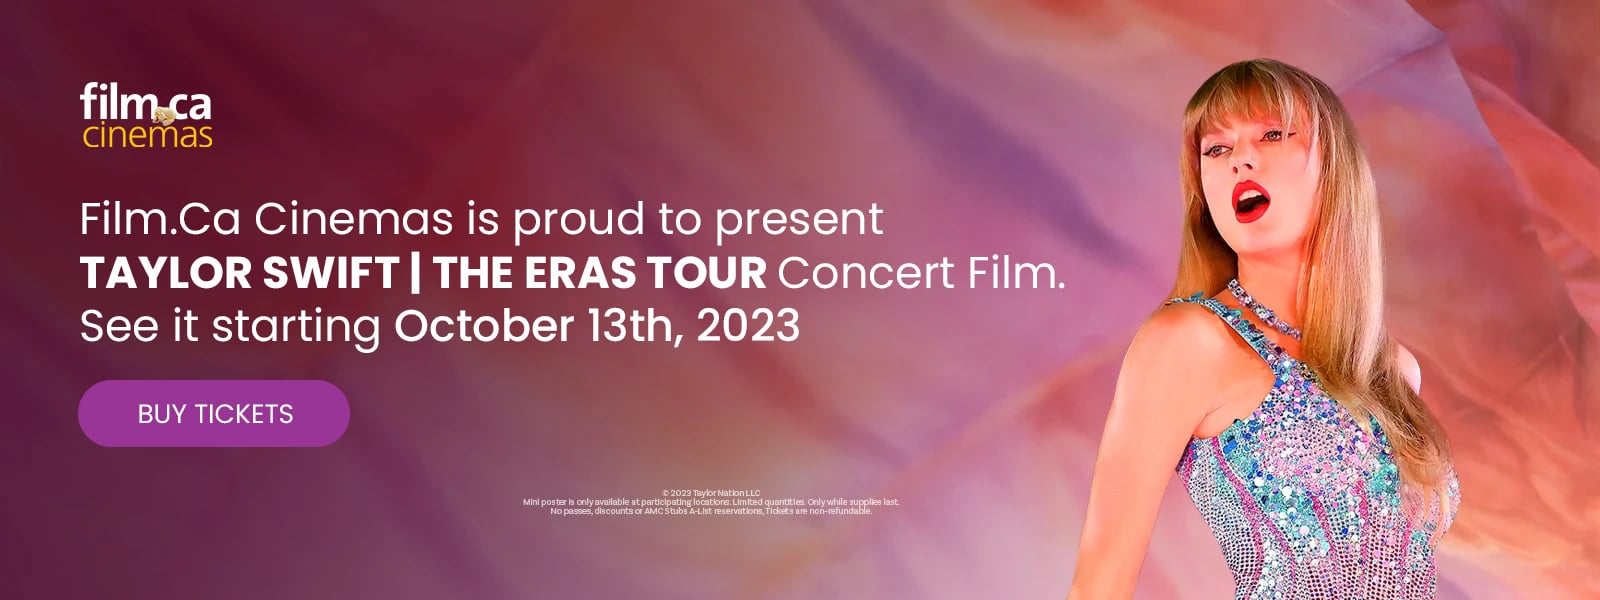 Taylor Swift - The Eras Tour Concert Film